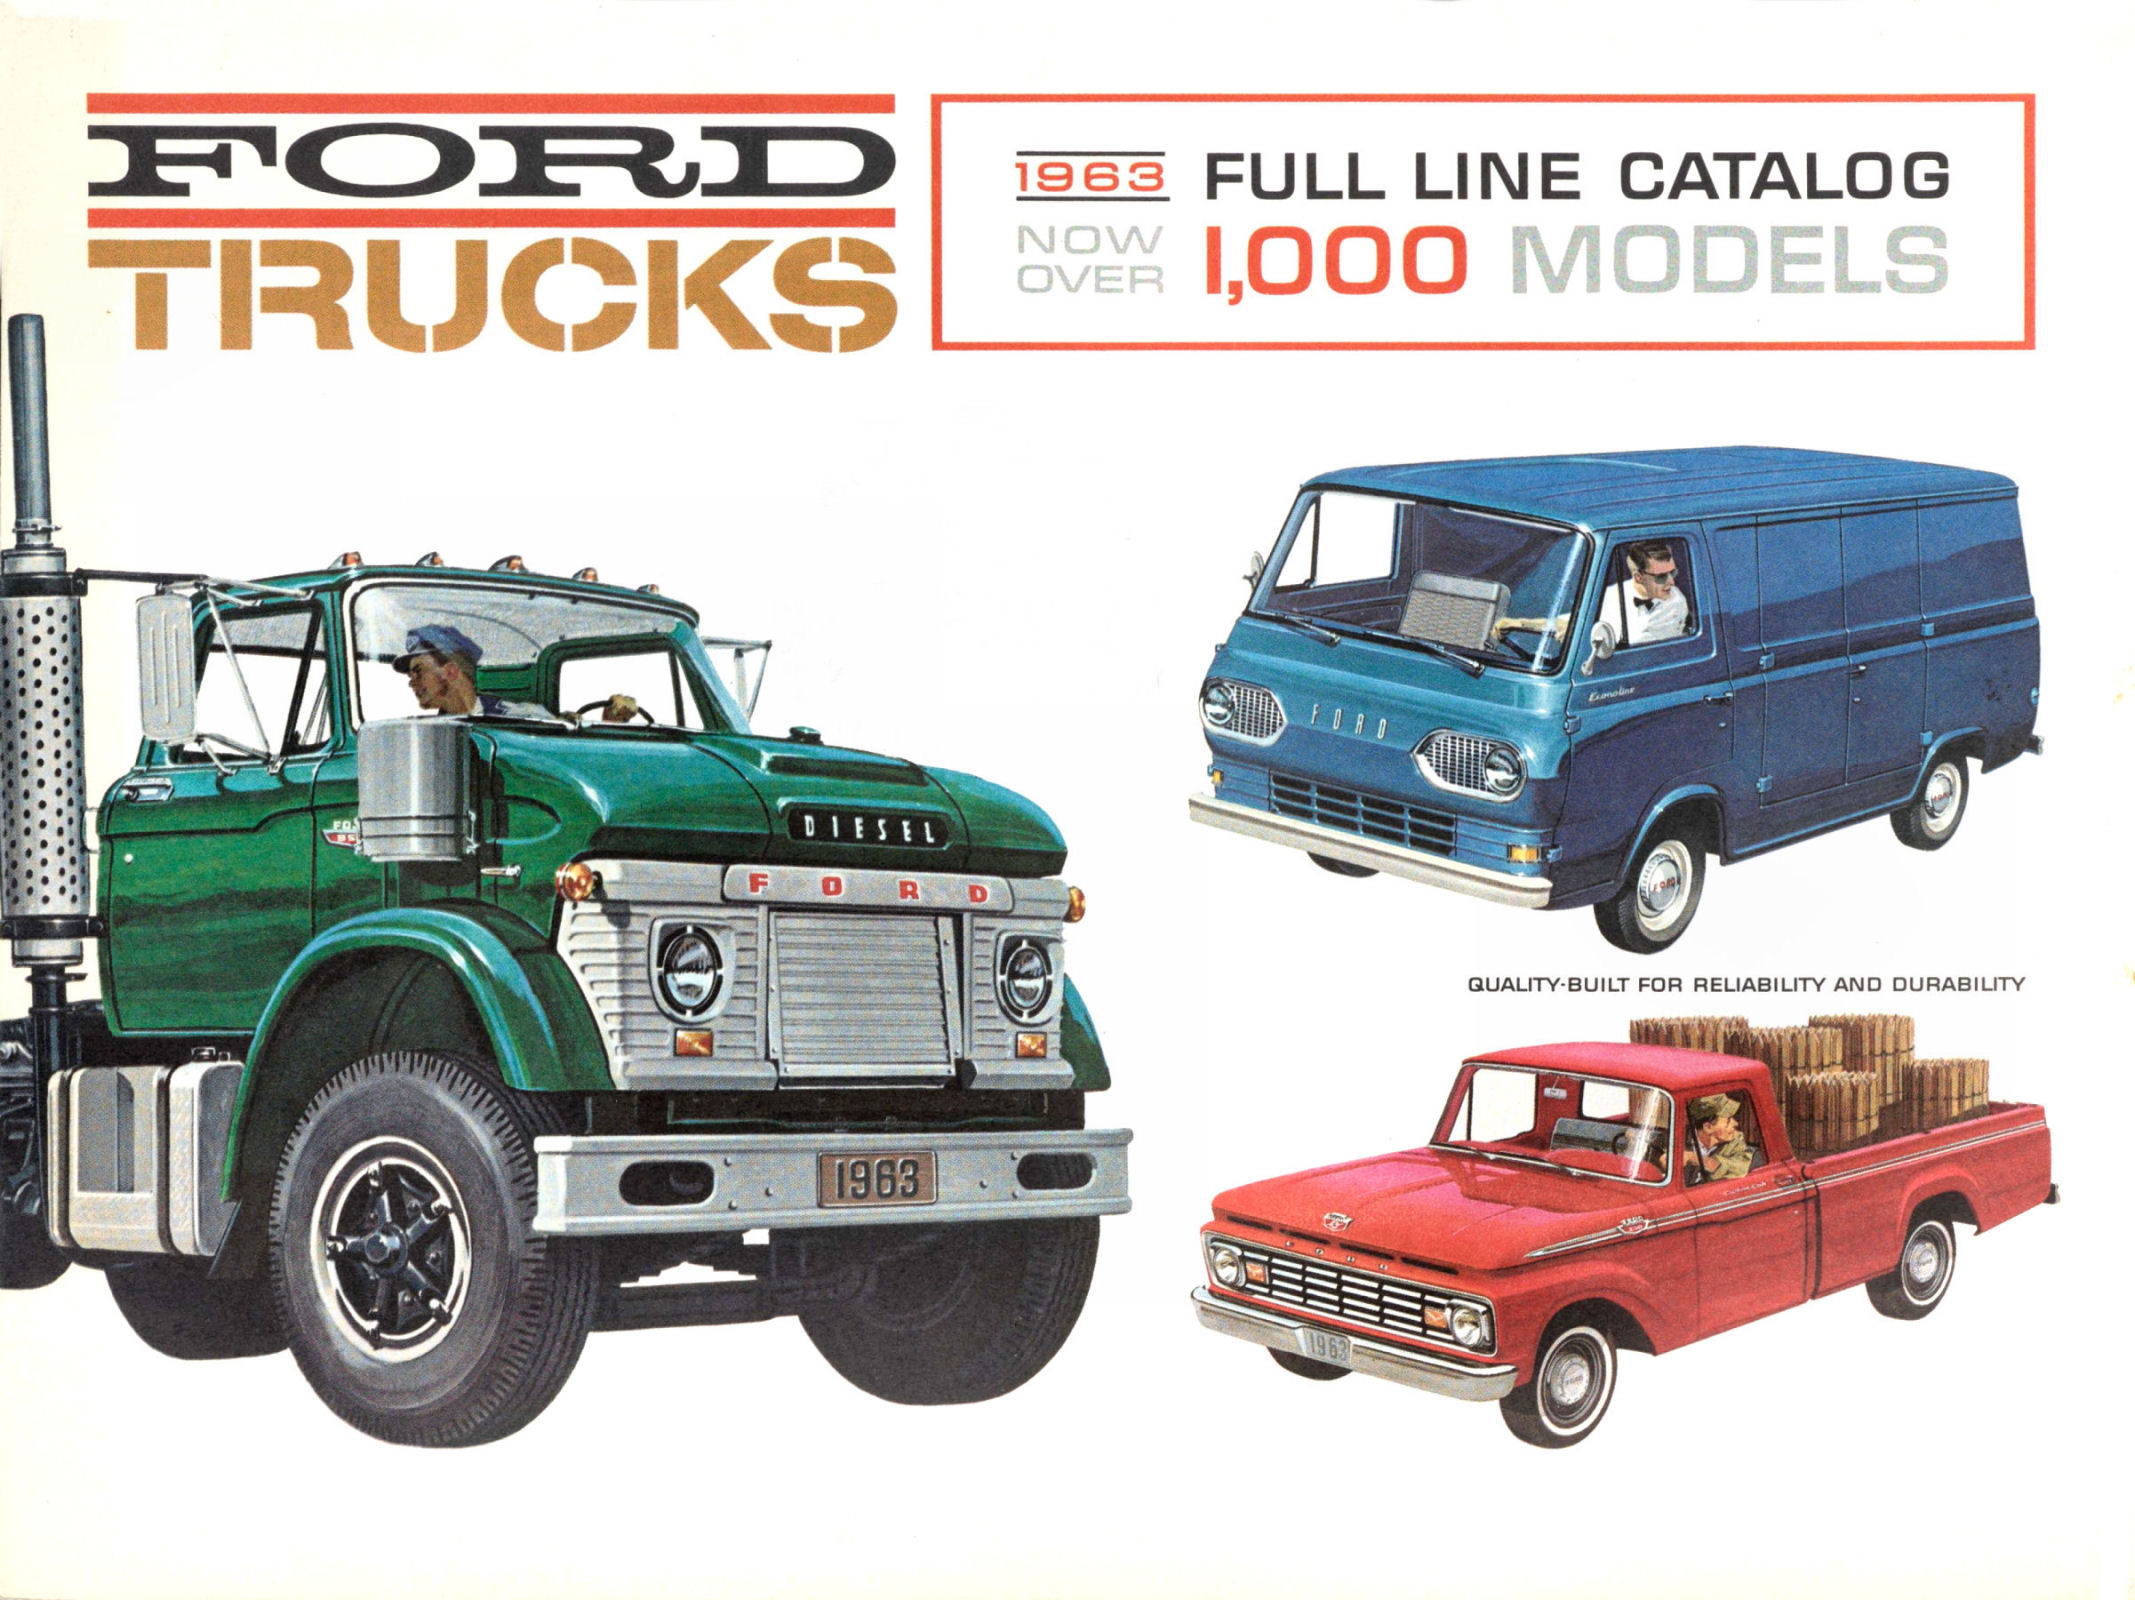 1963 Ford Trucks-01